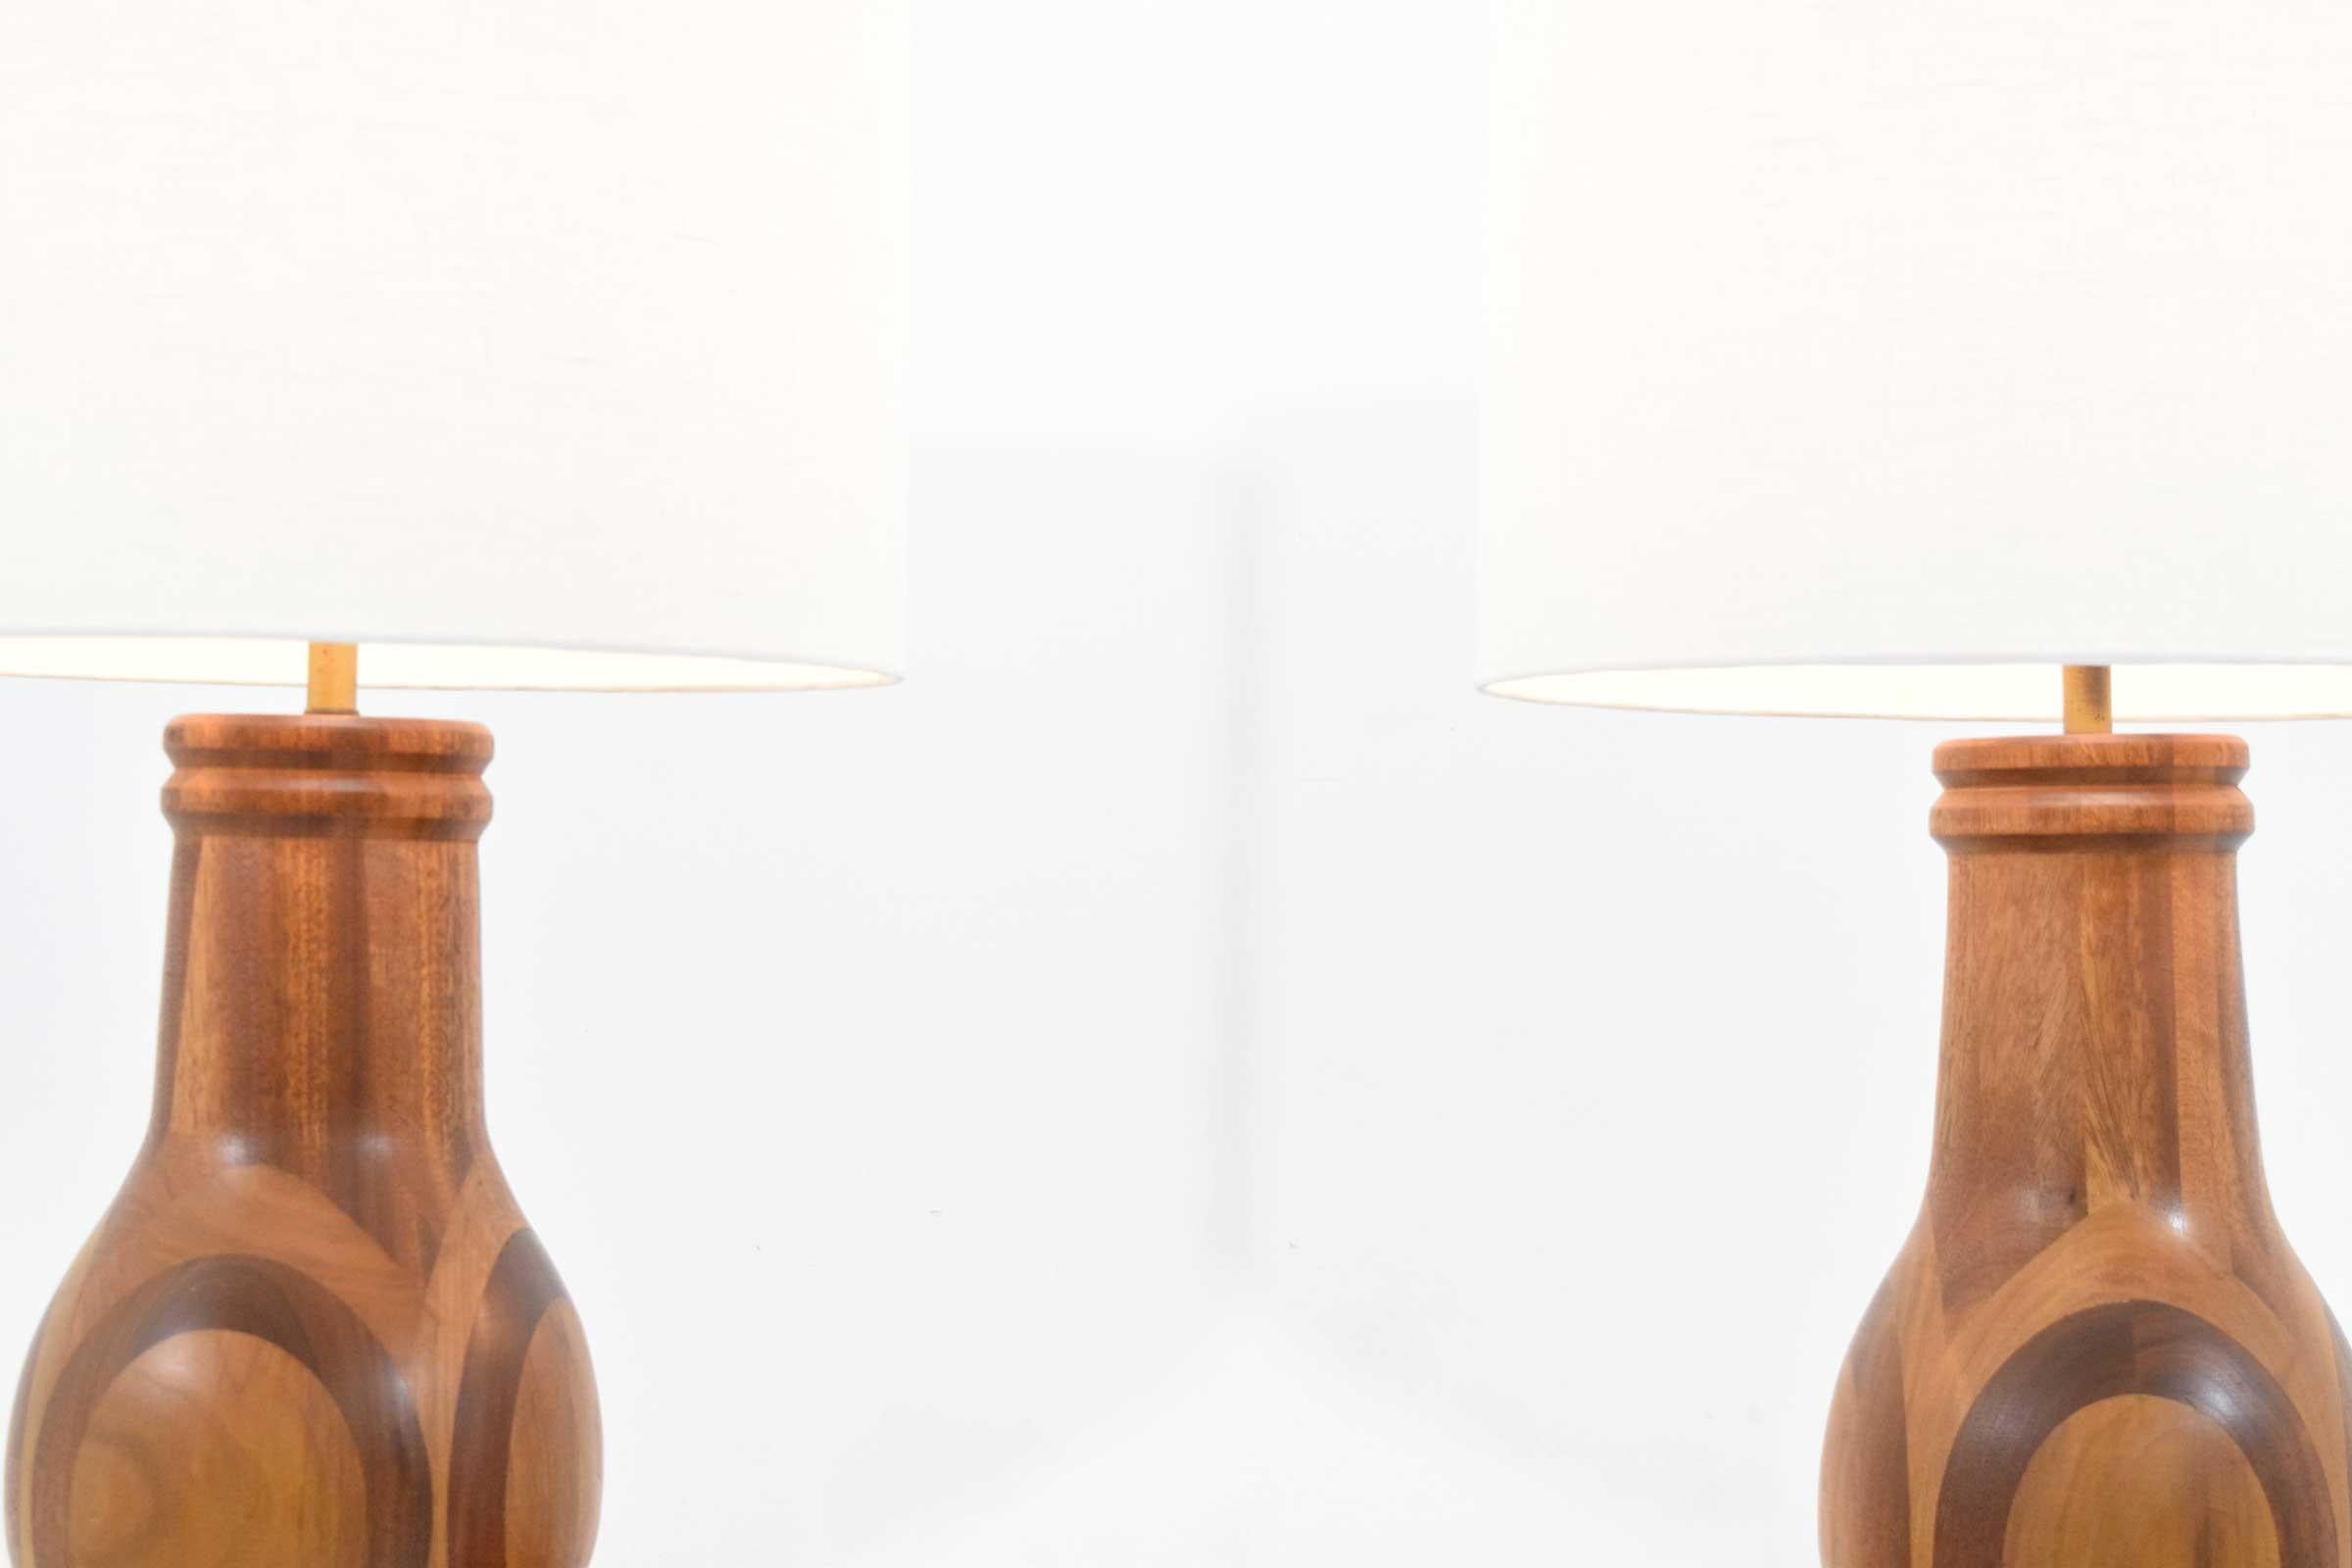 Wunderschönes Paar Holzlampen mit tollem Muster, das ein eingelegtes Holzdesign aufweist. Die Lampen sind 36,75